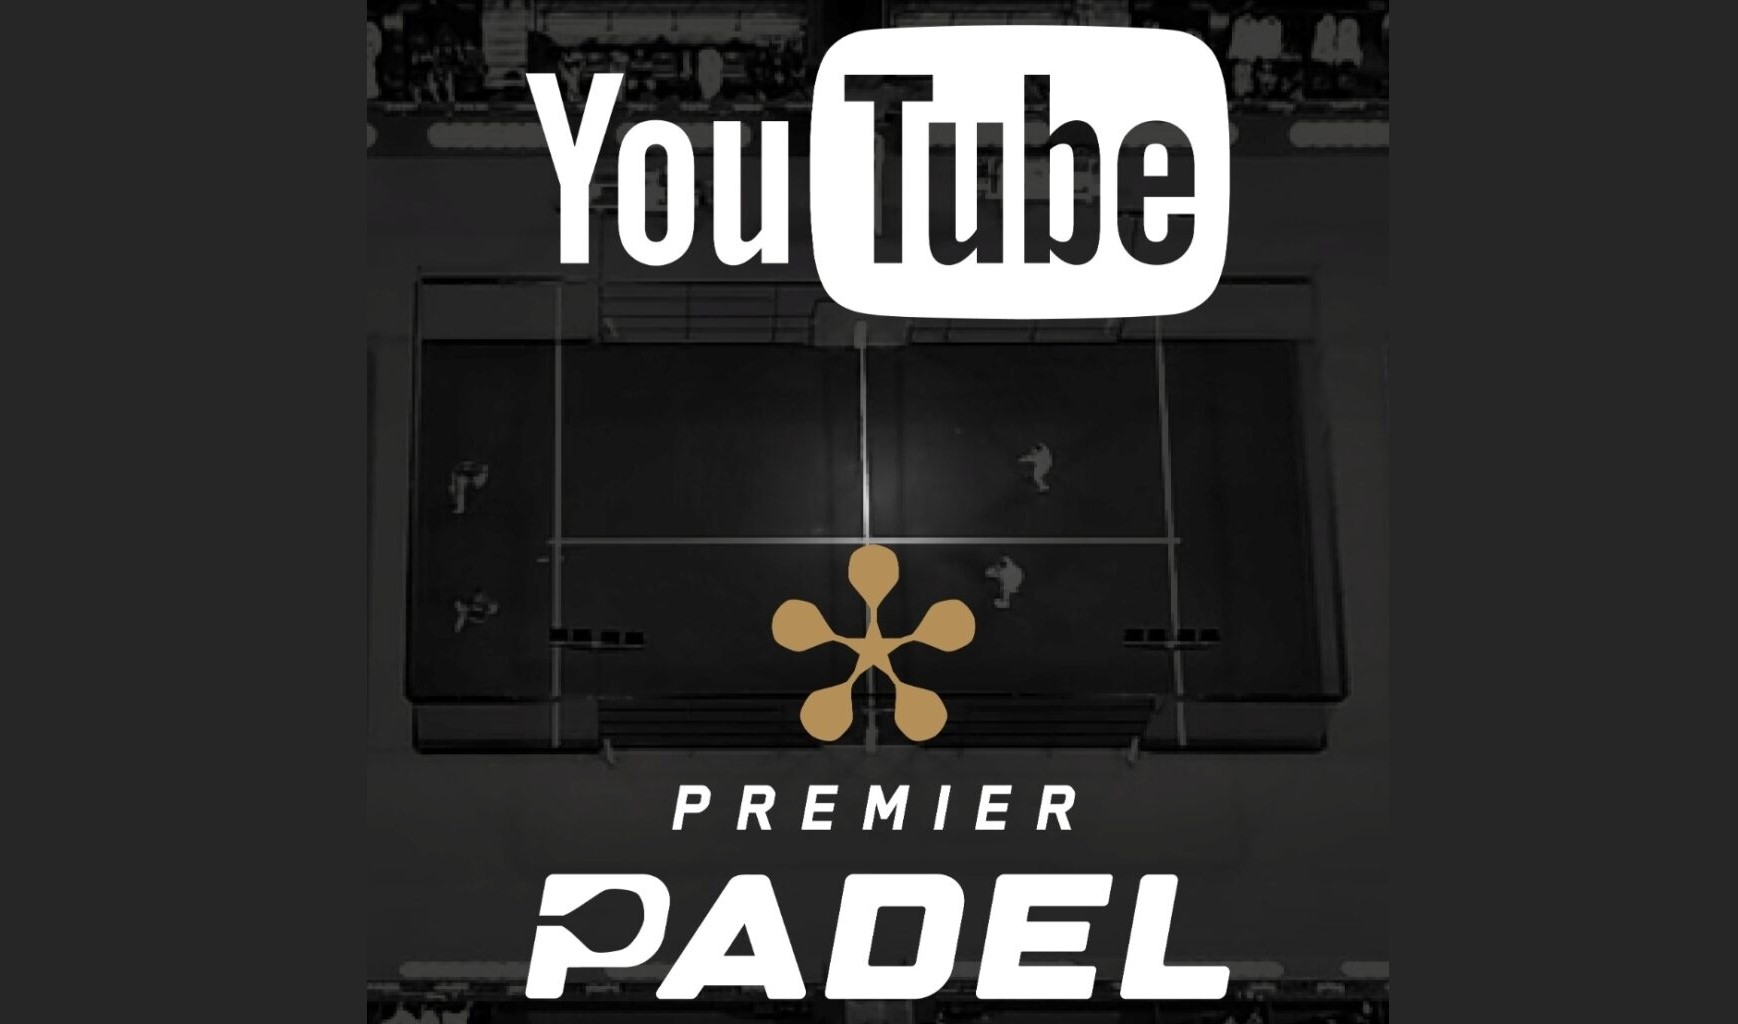 Premier Padel sändes på Youtube i Spanien